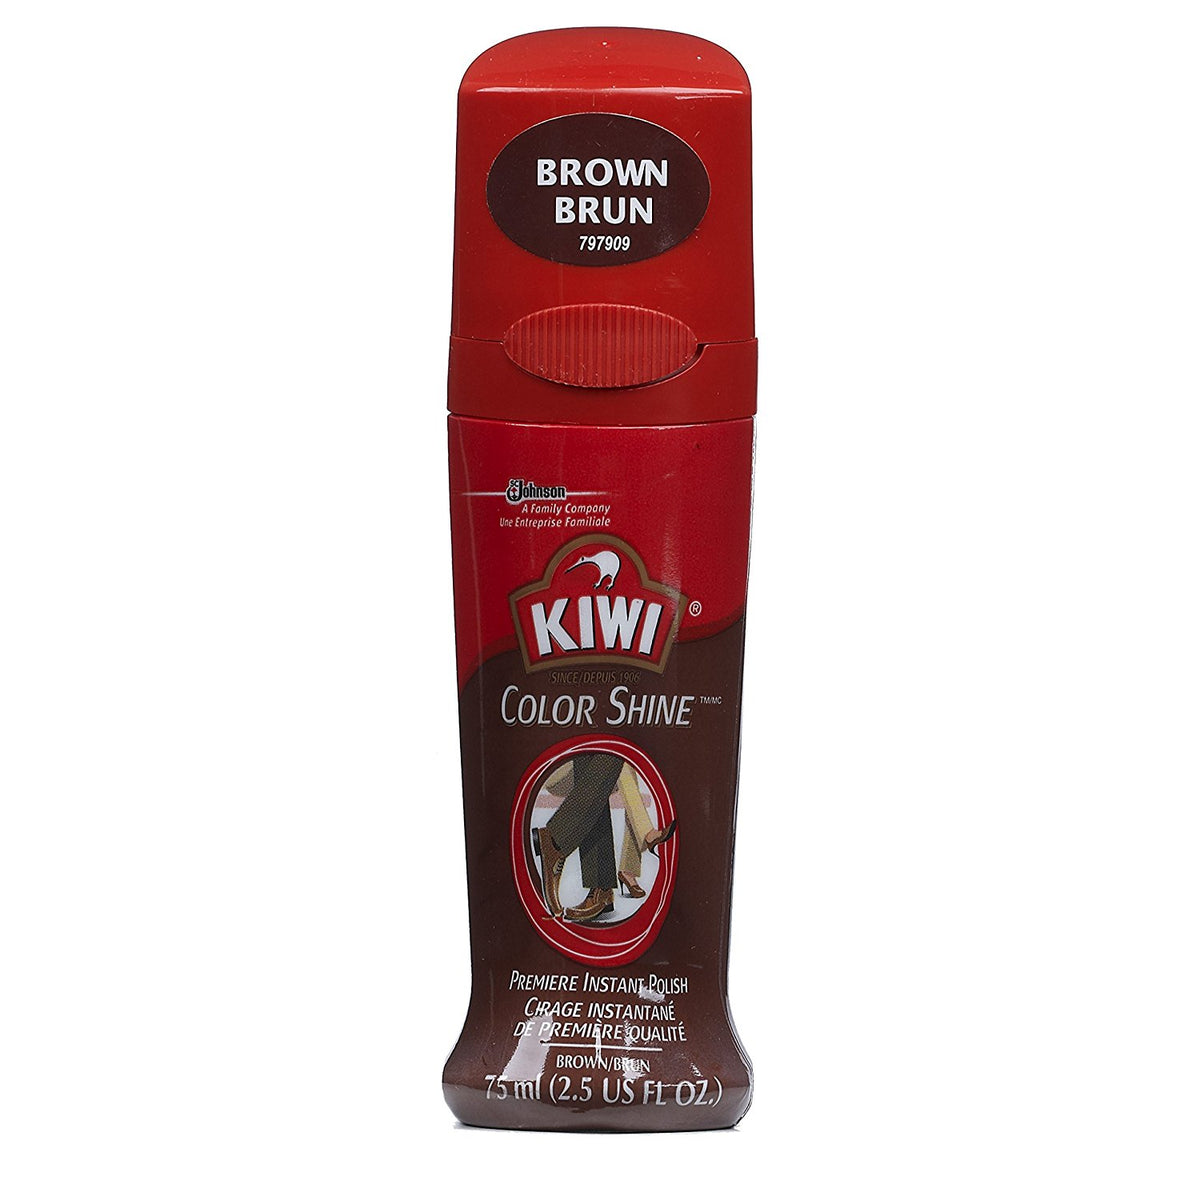 Kiwi 11313 Color Shine Premier Instant Leather Shoe Polish, Brown, 2.5 Oz